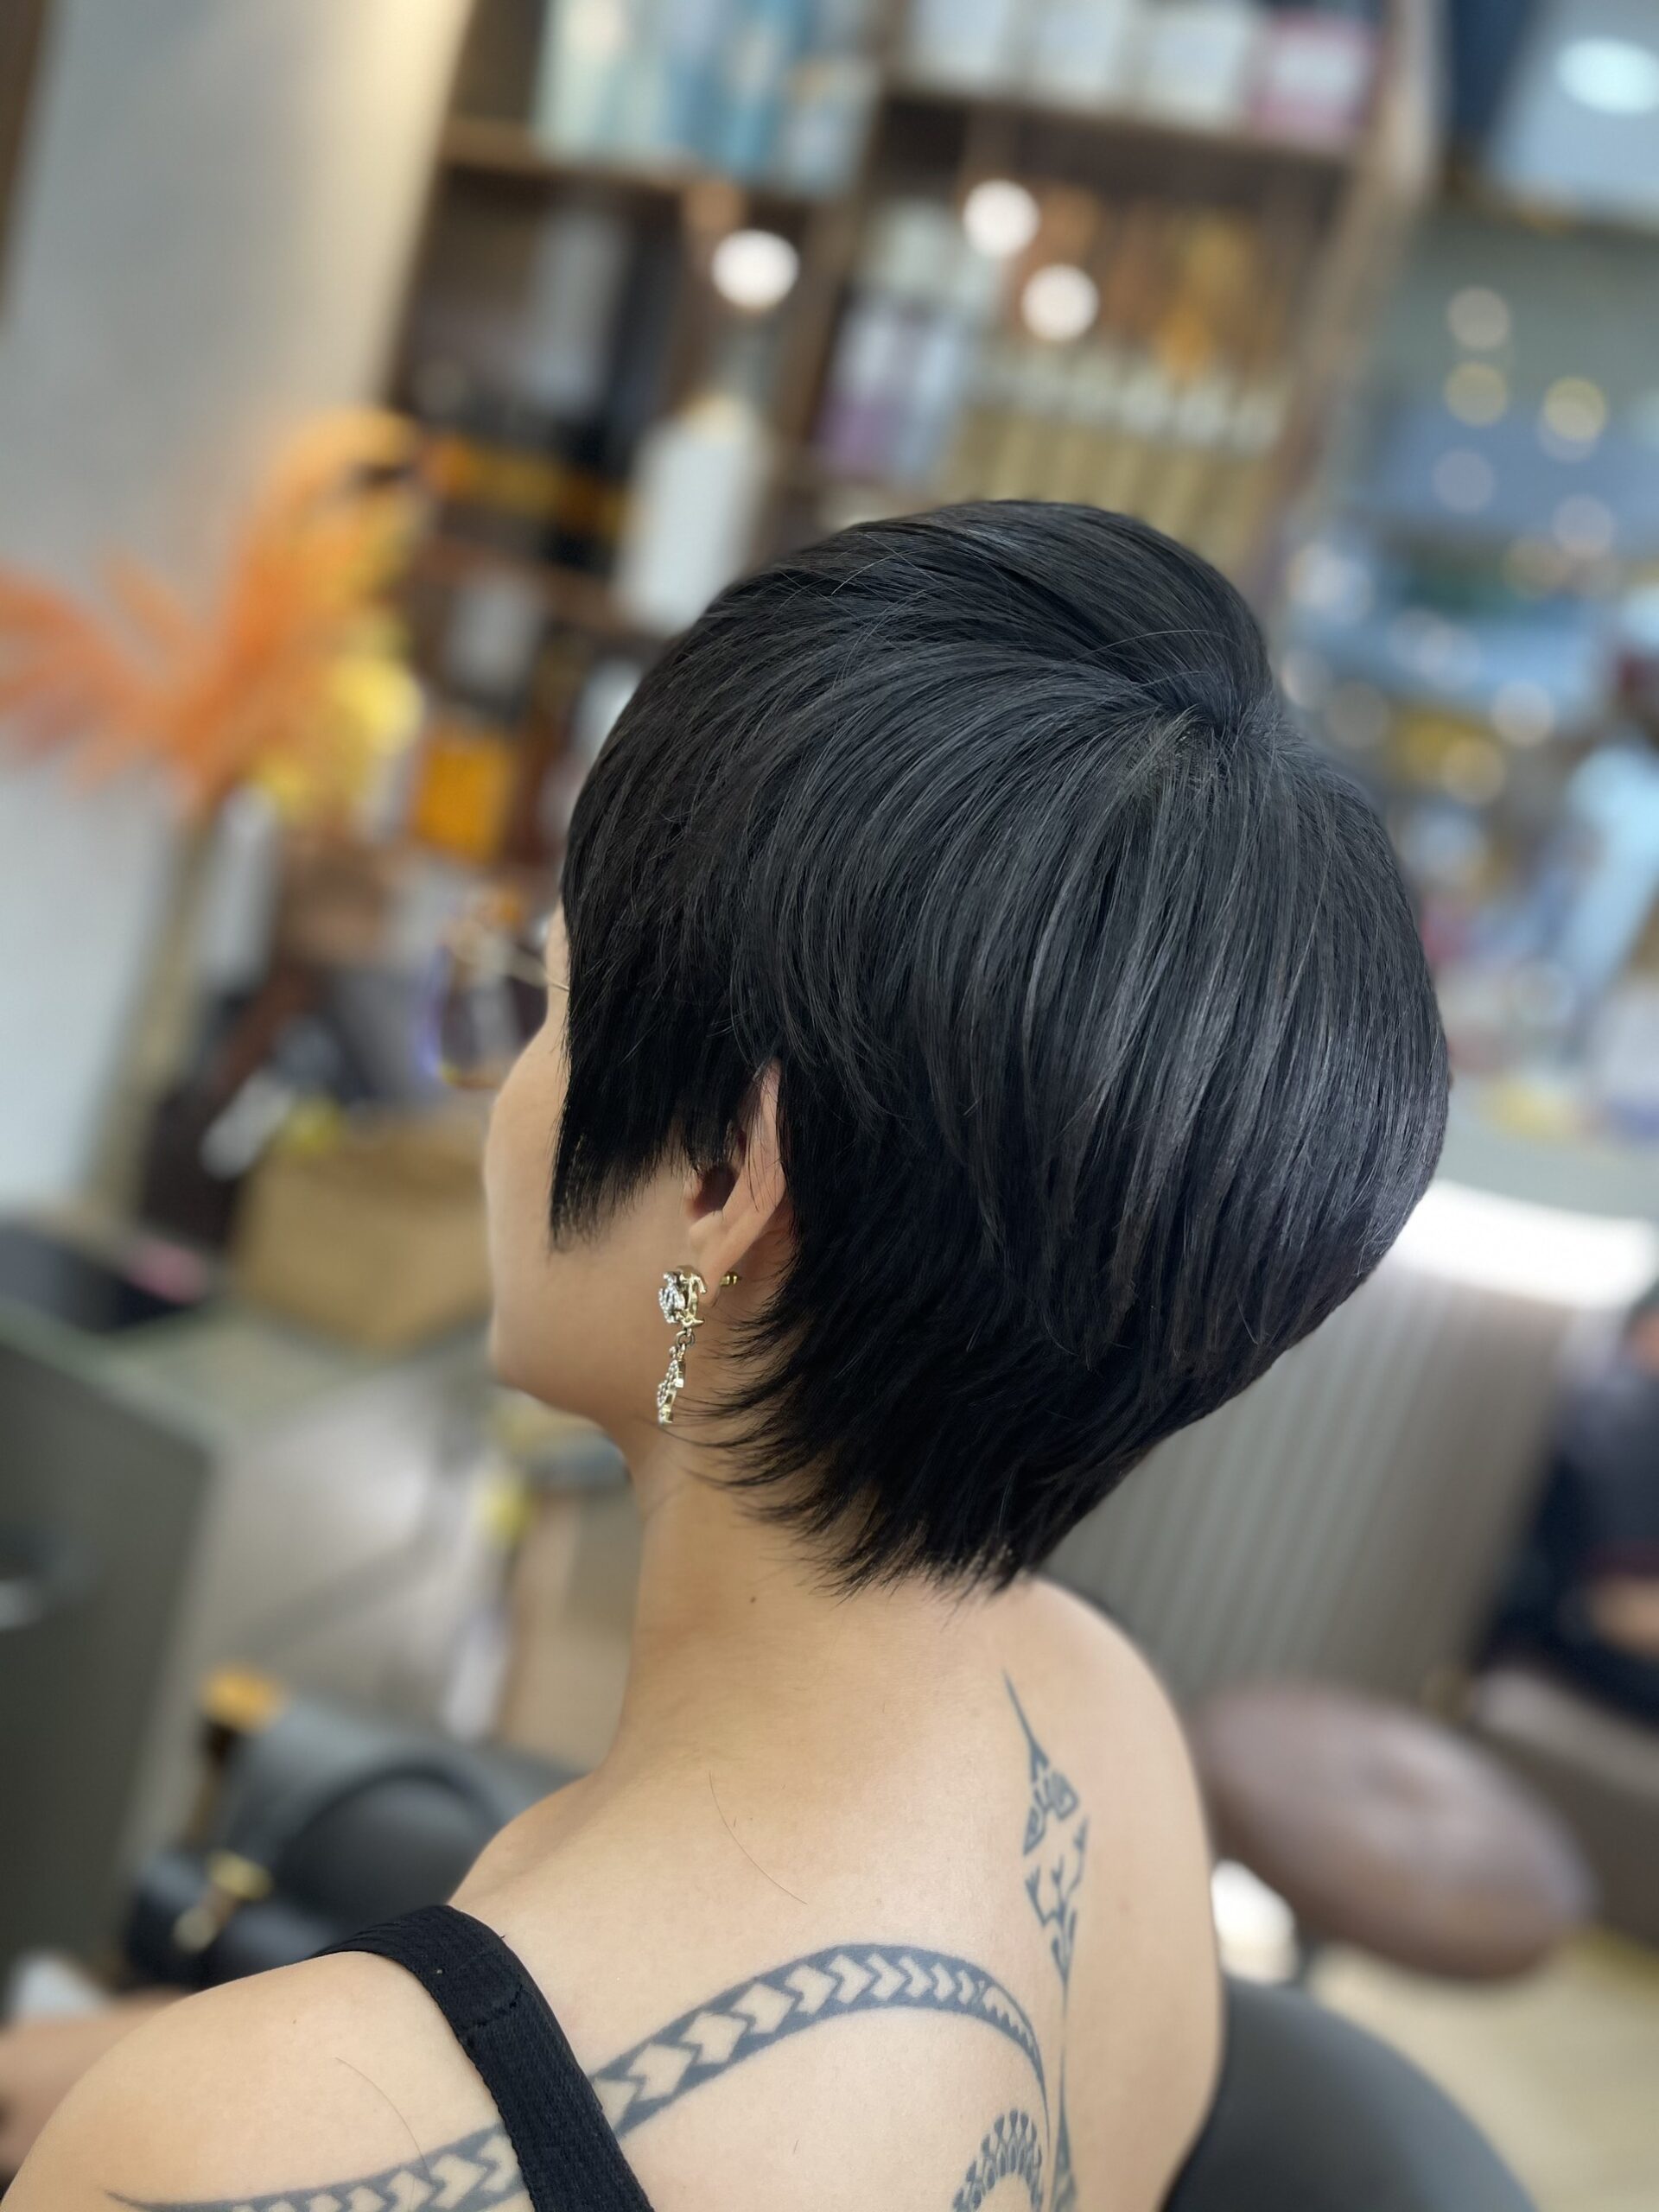 salon cắt tóc ngắn đẹp như Hair Salon Thuận thường hay tư vấn những kiểu nào